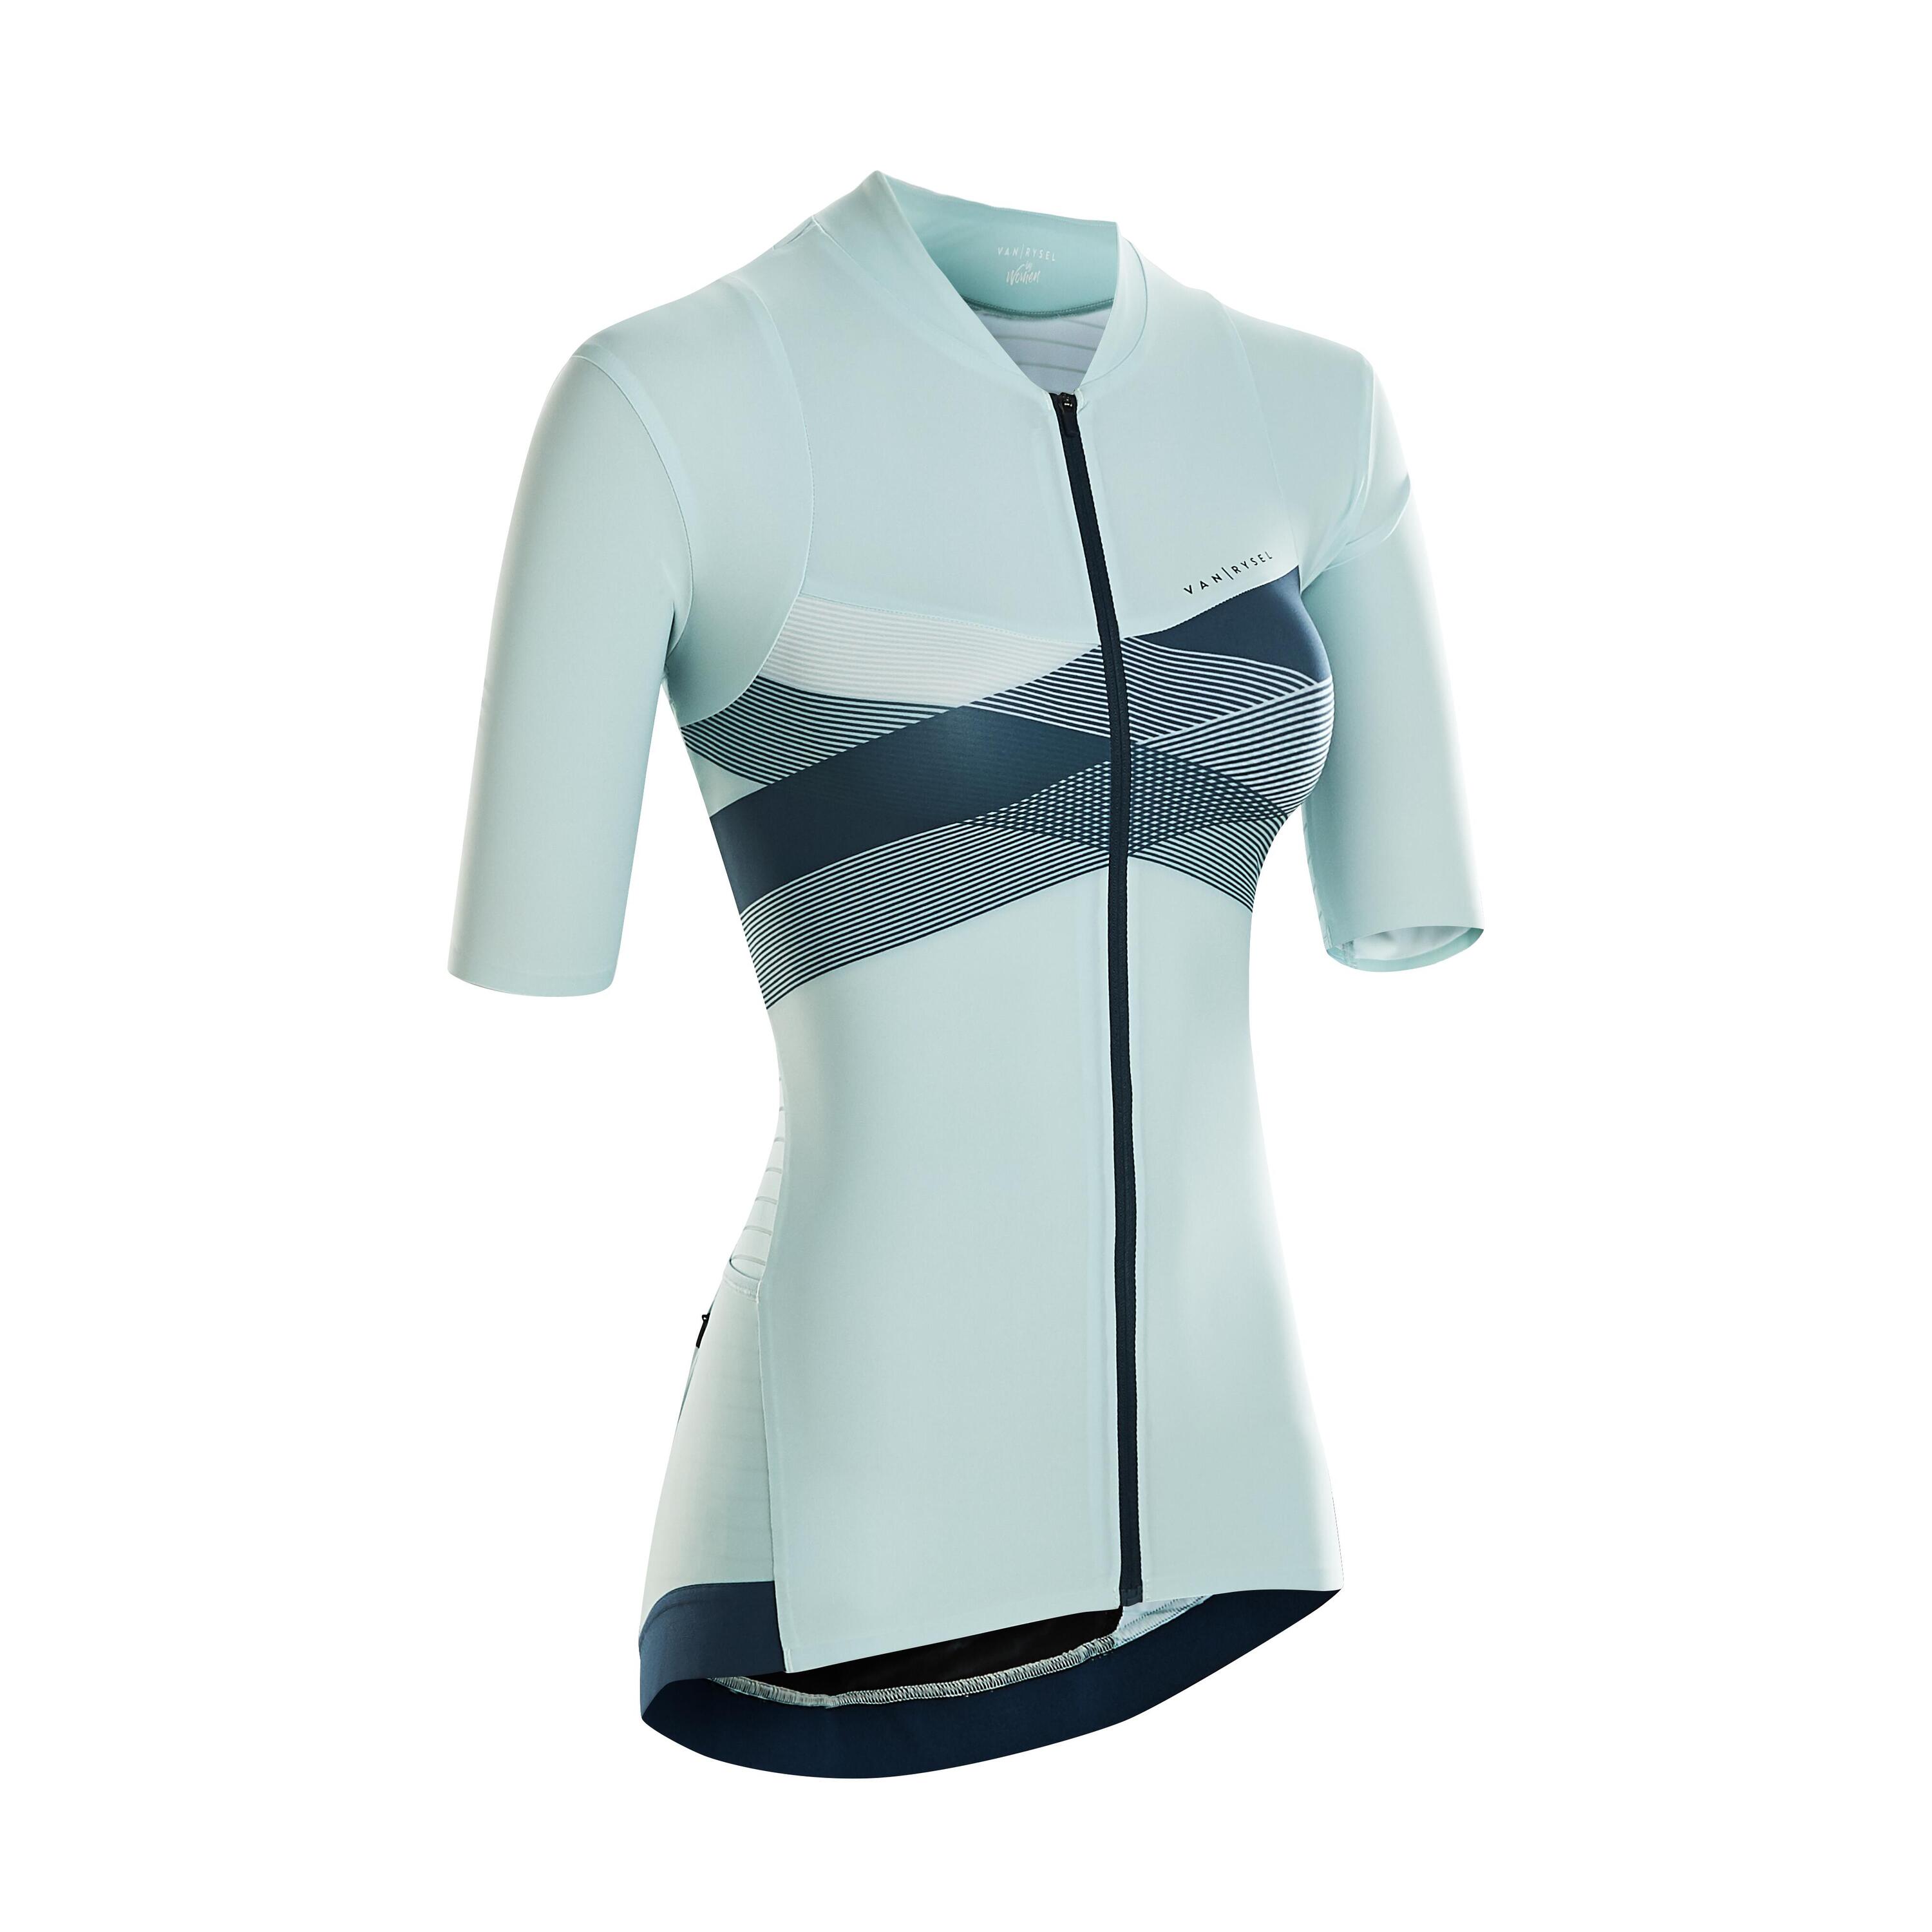 Women's Cycling Short-Sleeved Jersey RCR - Mint/Cross 1/5